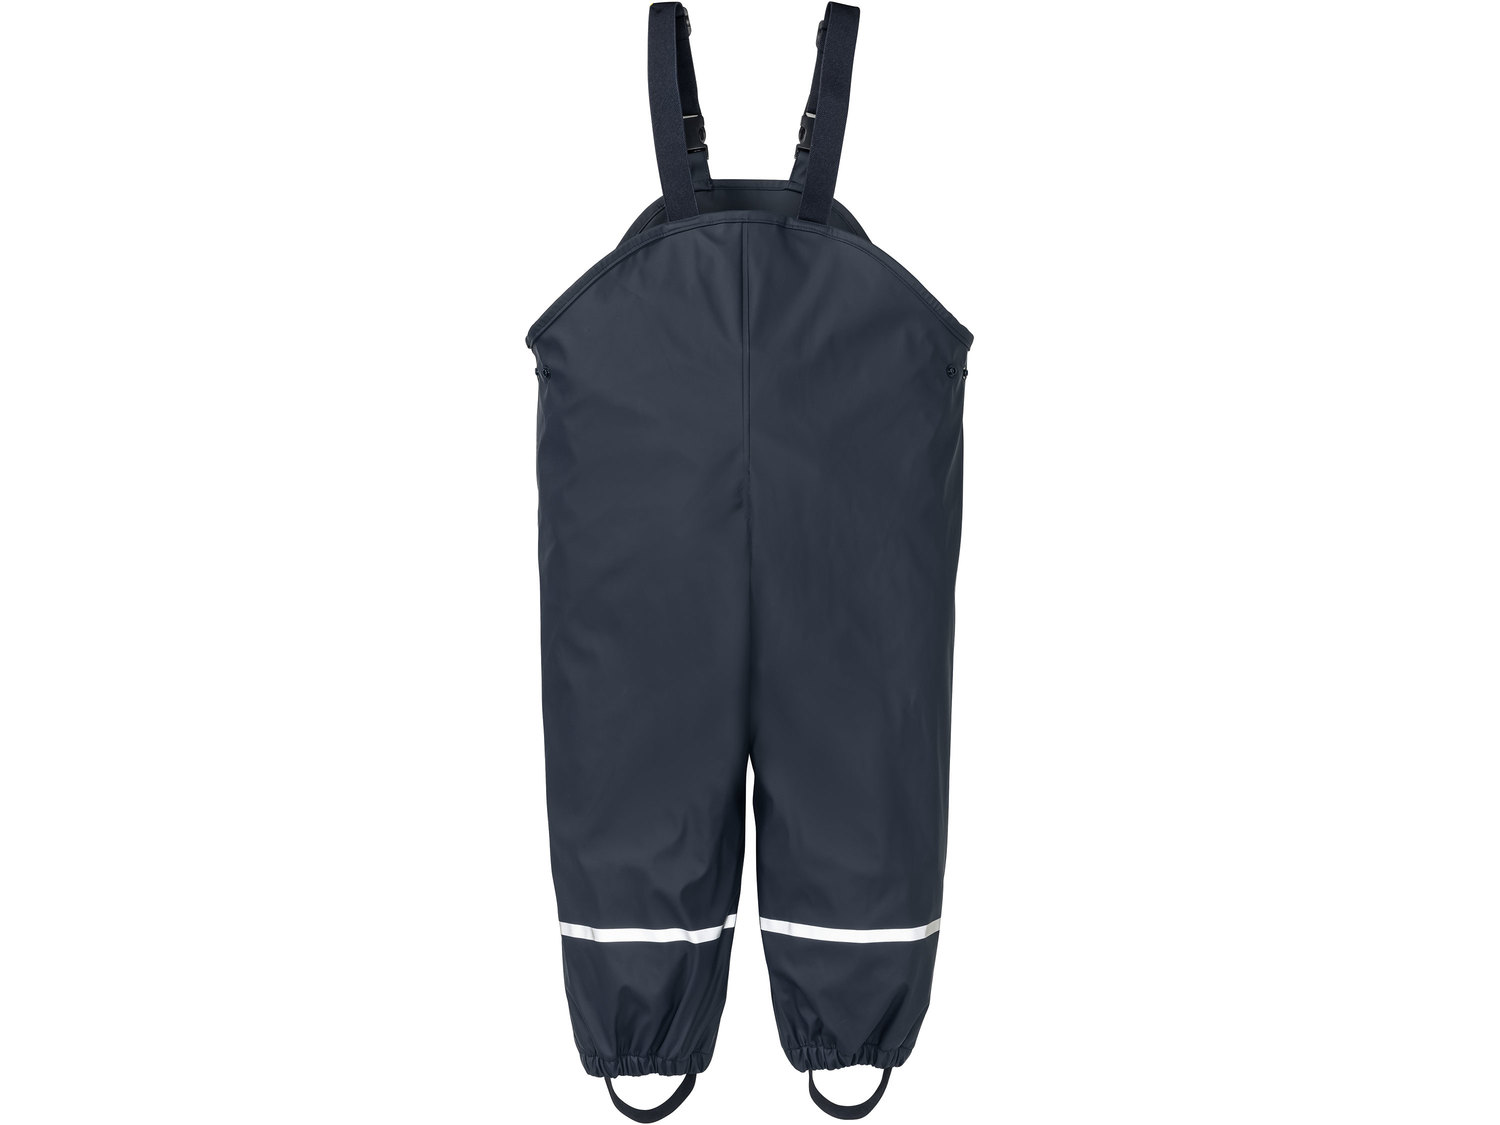 Spodnie przeciwdeszczowe Lupilu, cena 29,99 PLN 
- zakończenie nogawek z gumką ...